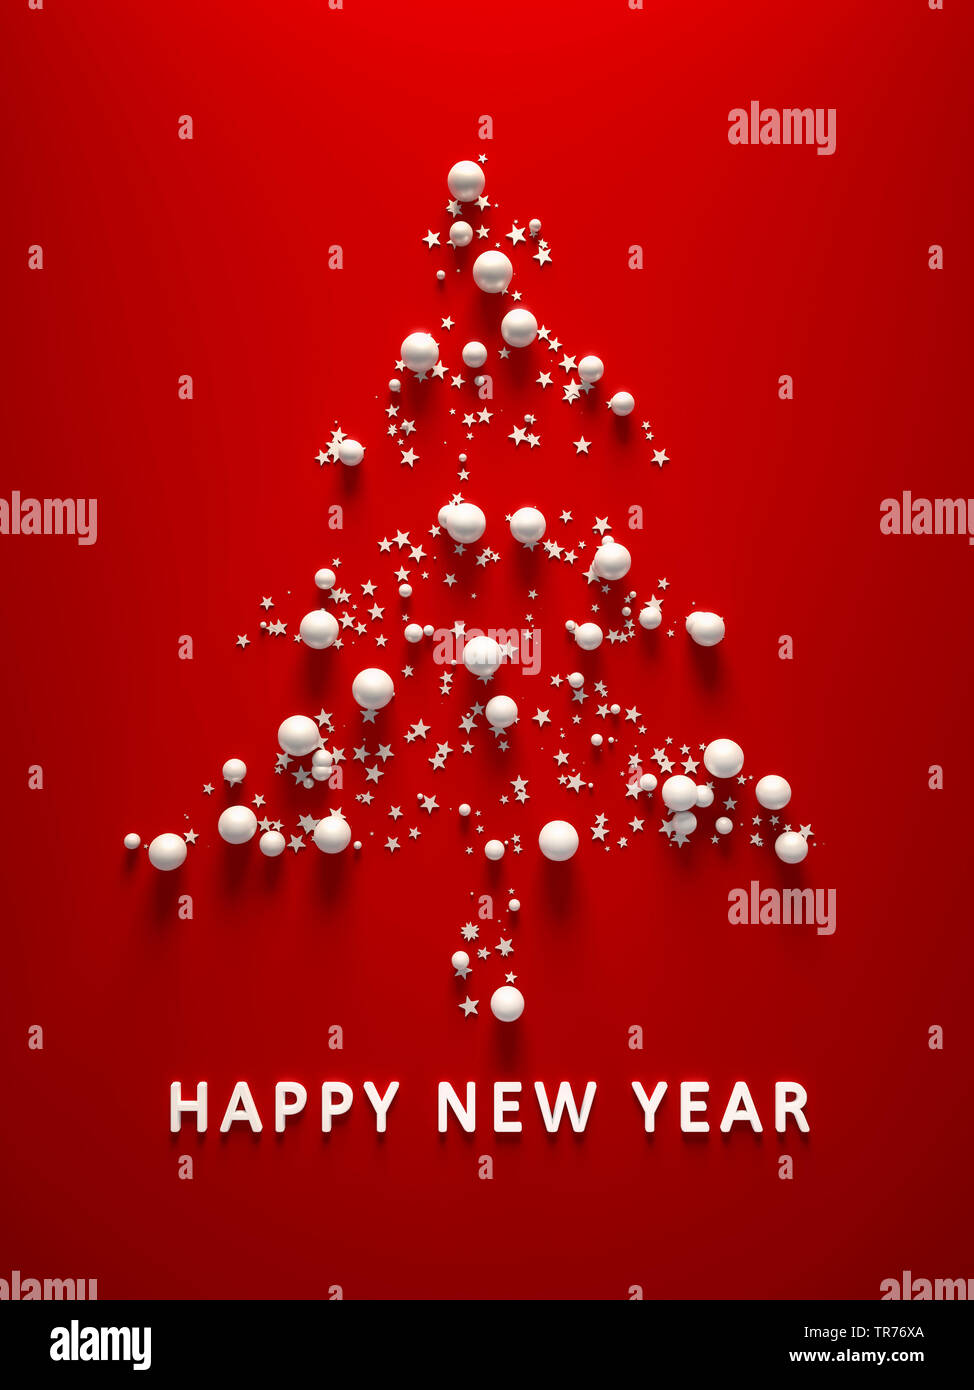 Carte de Noël en couleur rouge avec arbre de Noël symbolique des étoiles et boules BONNE ANNÉE lettrage Banque D'Images